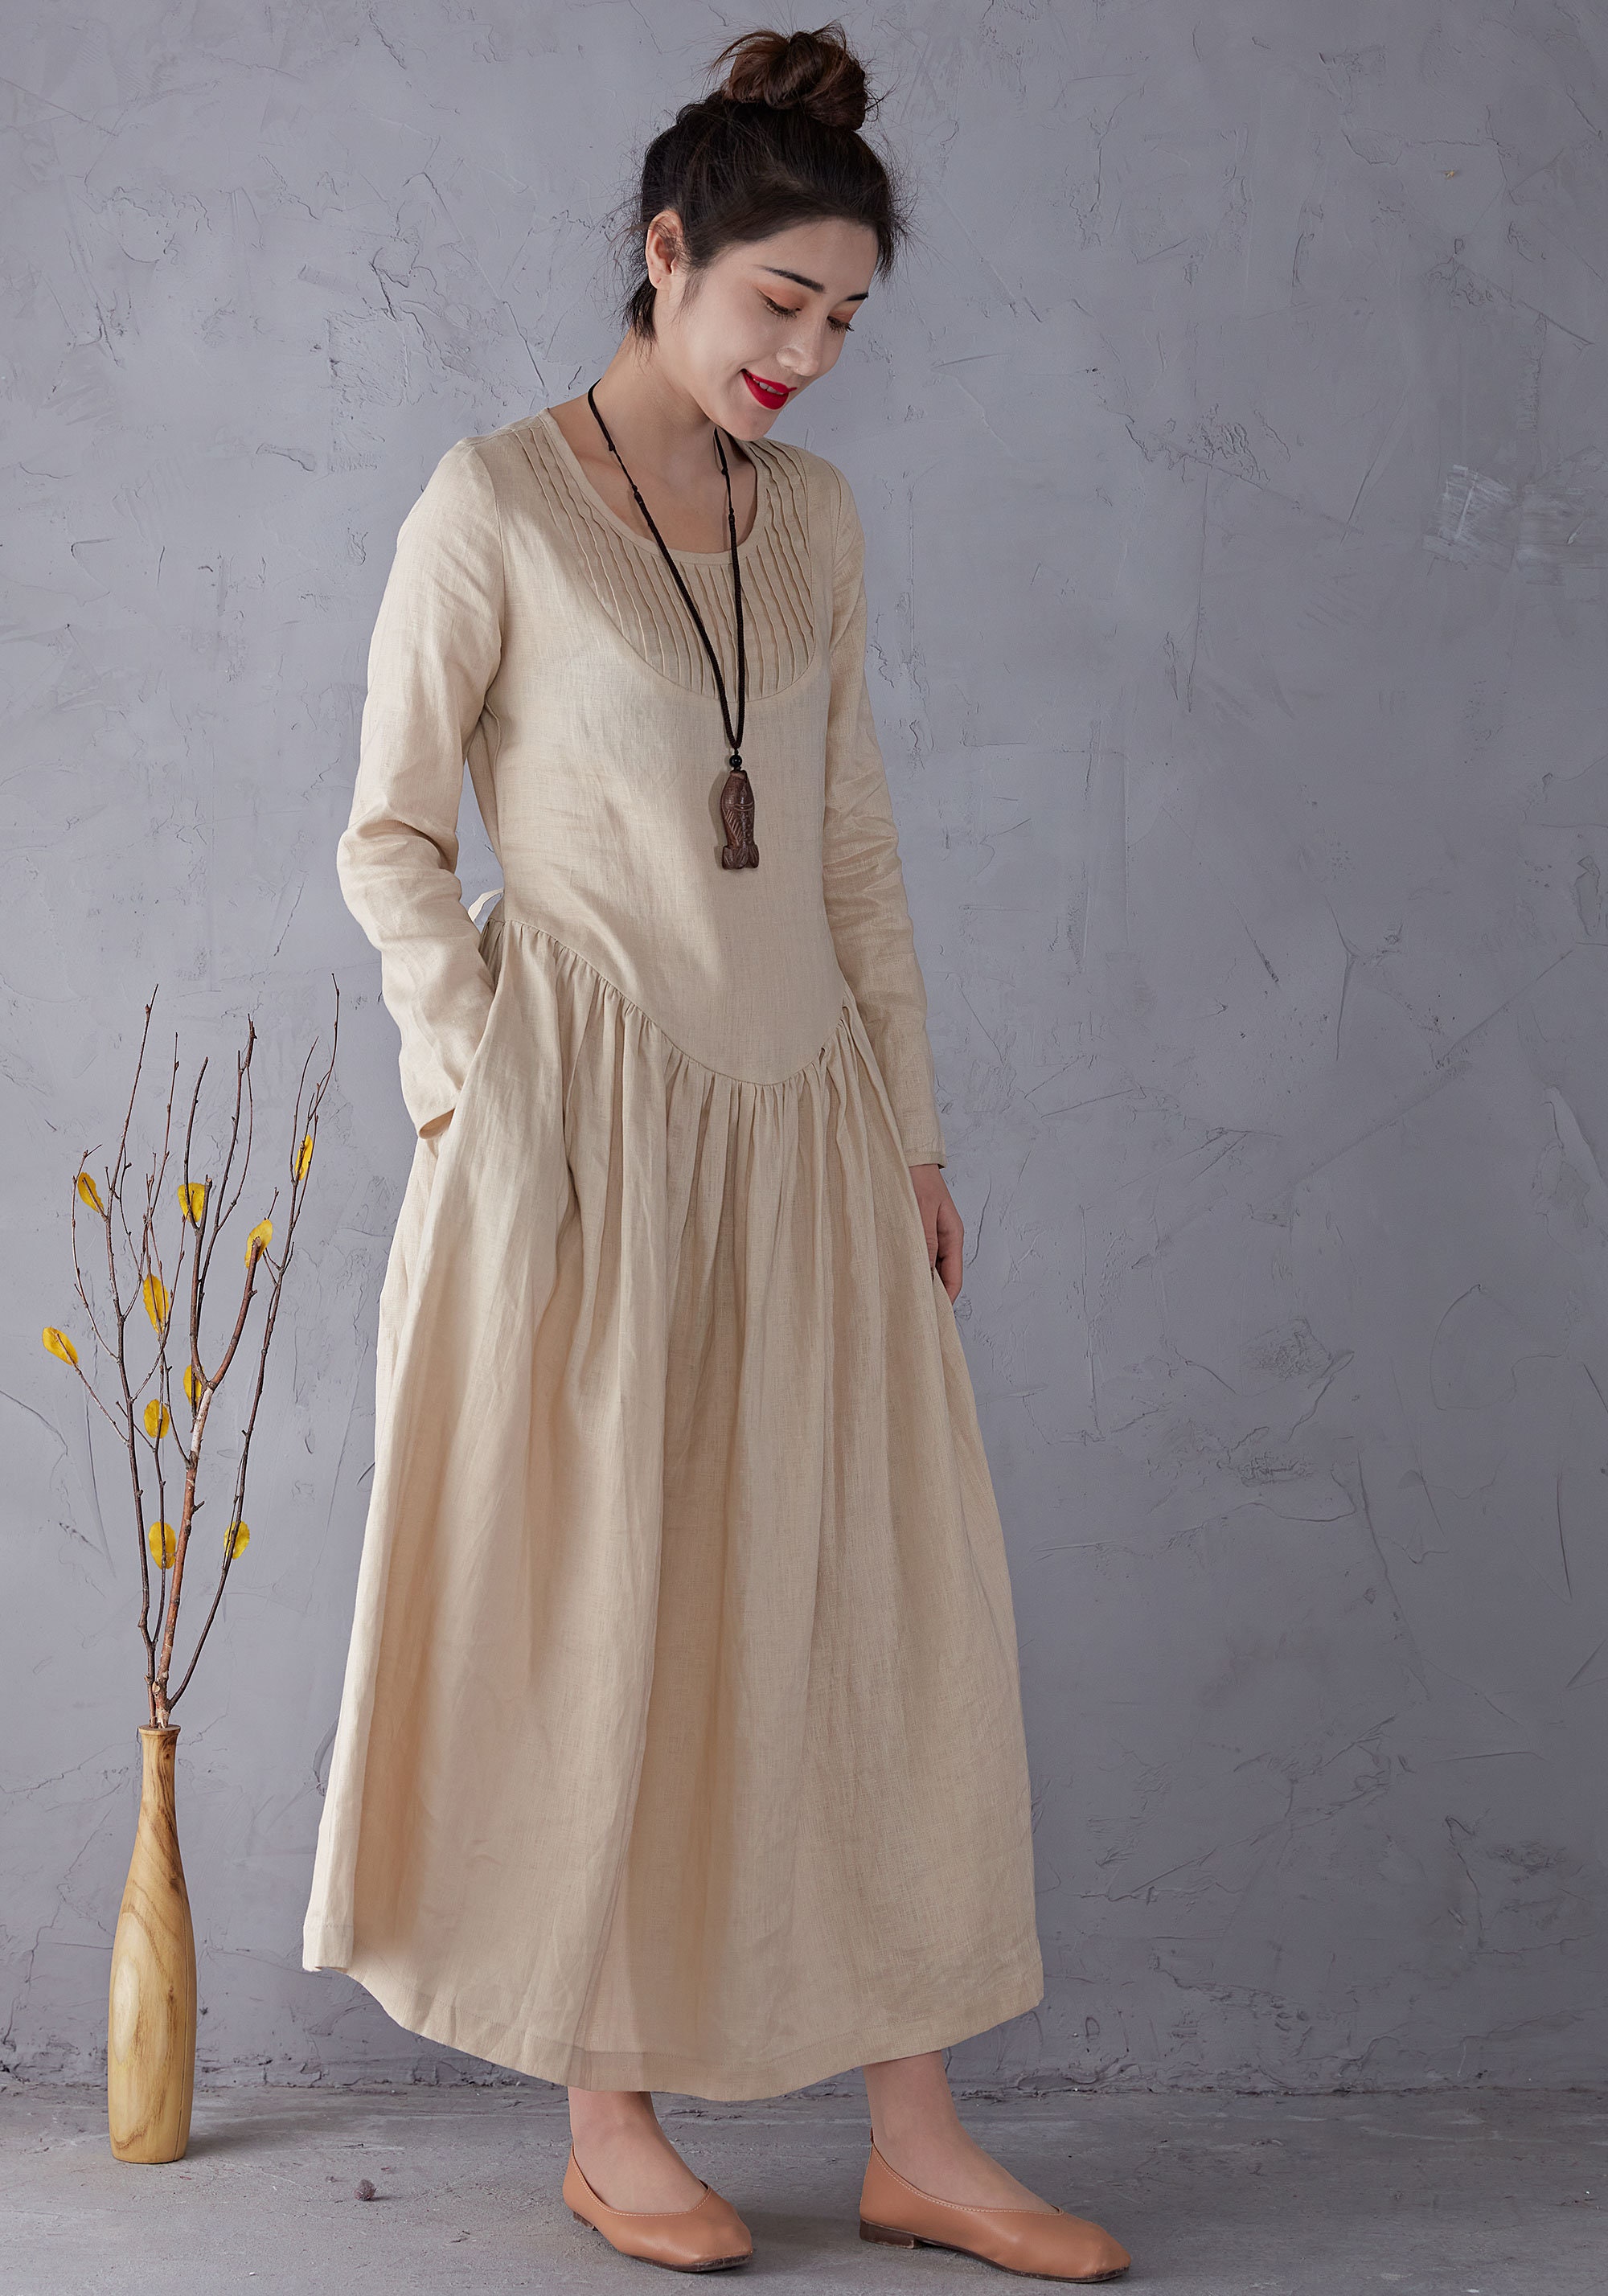 Linen Dress Beige Linen Dress Long sleeve Linen Dress Long | Etsy